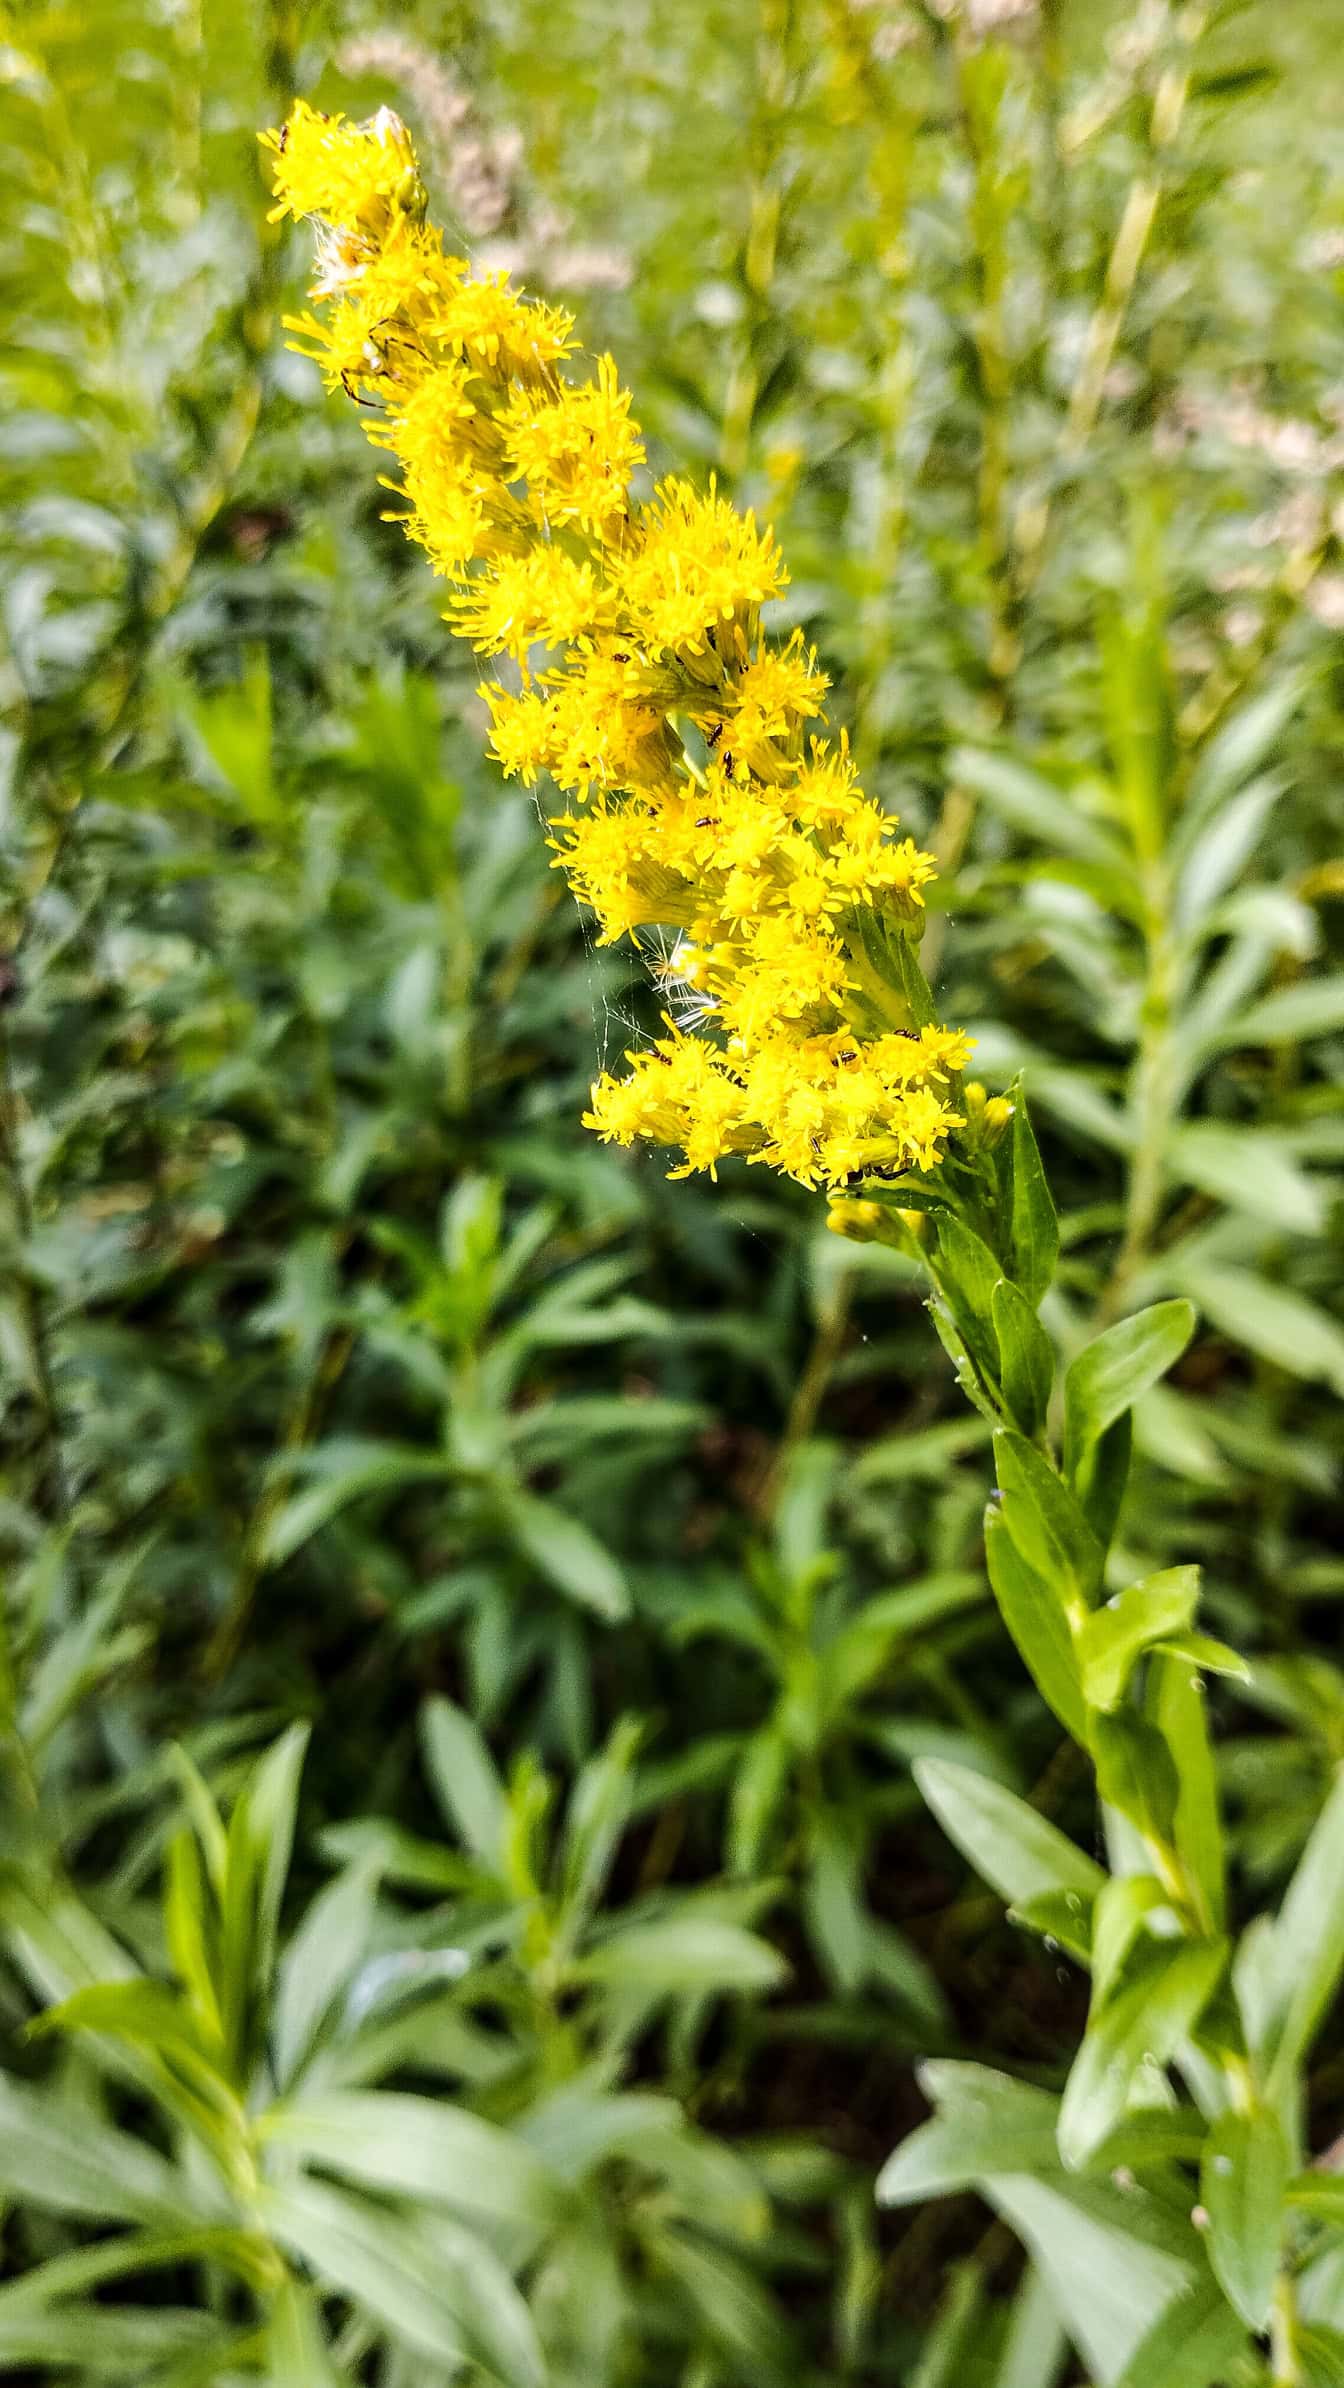 Kwiat znany jako nawłoć kanadyjska (Solidago canadensis) żółtym kwiatem w pełnym rozkwicie